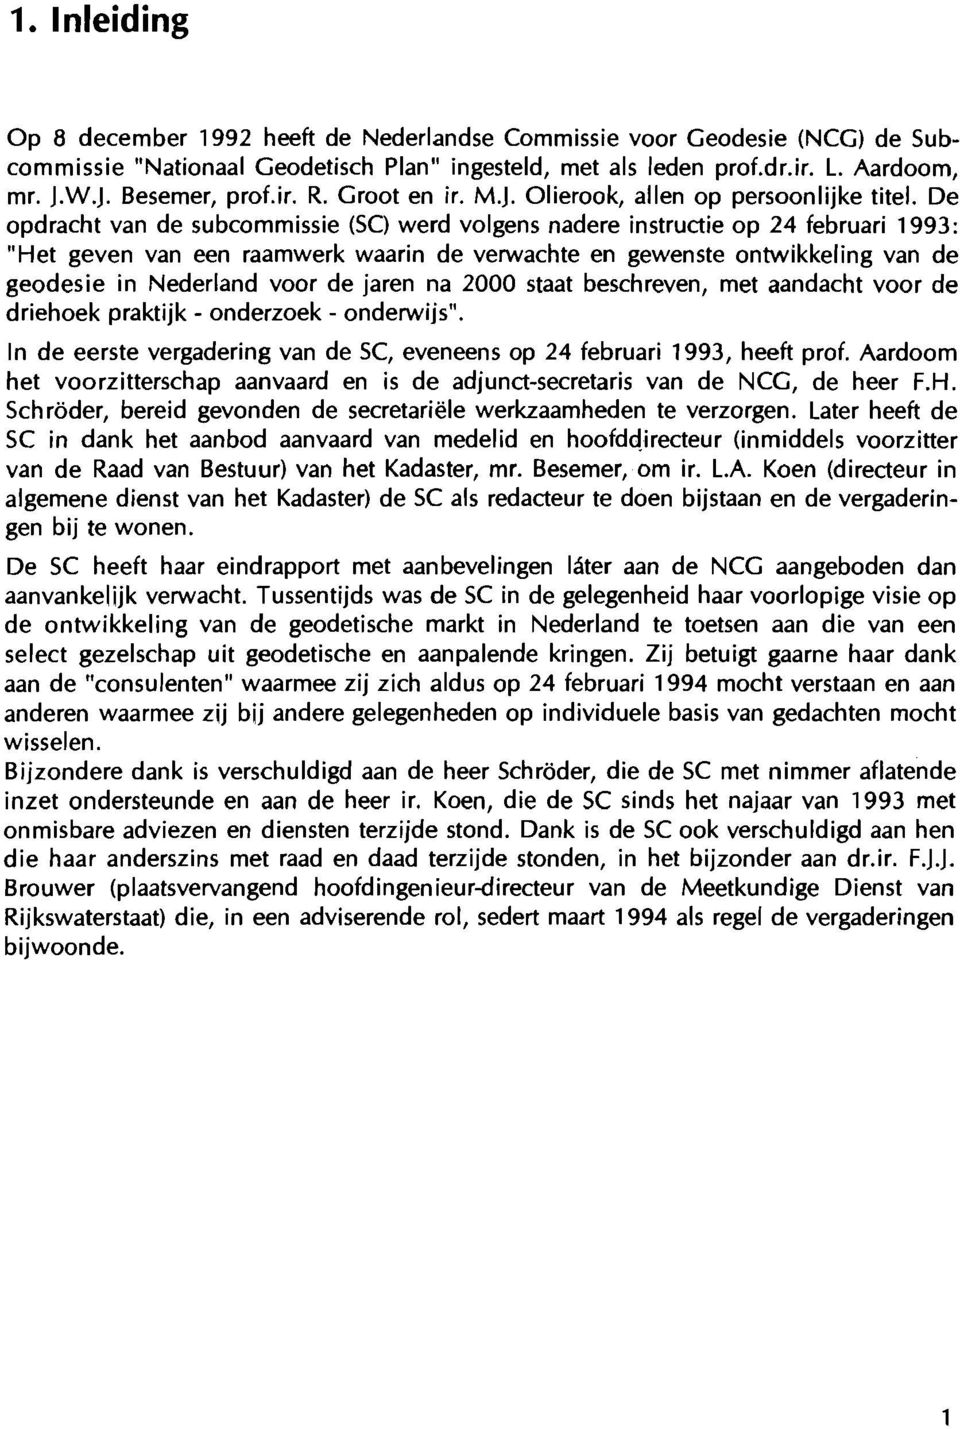 De opdracht van de subcommissie (SC) werd volgens nadere instructie op 24 februari 1993: "Het geven van een raamwerk waarin de verwachte en gewenste ontwikkeling van de geodesie in Nederland voor de